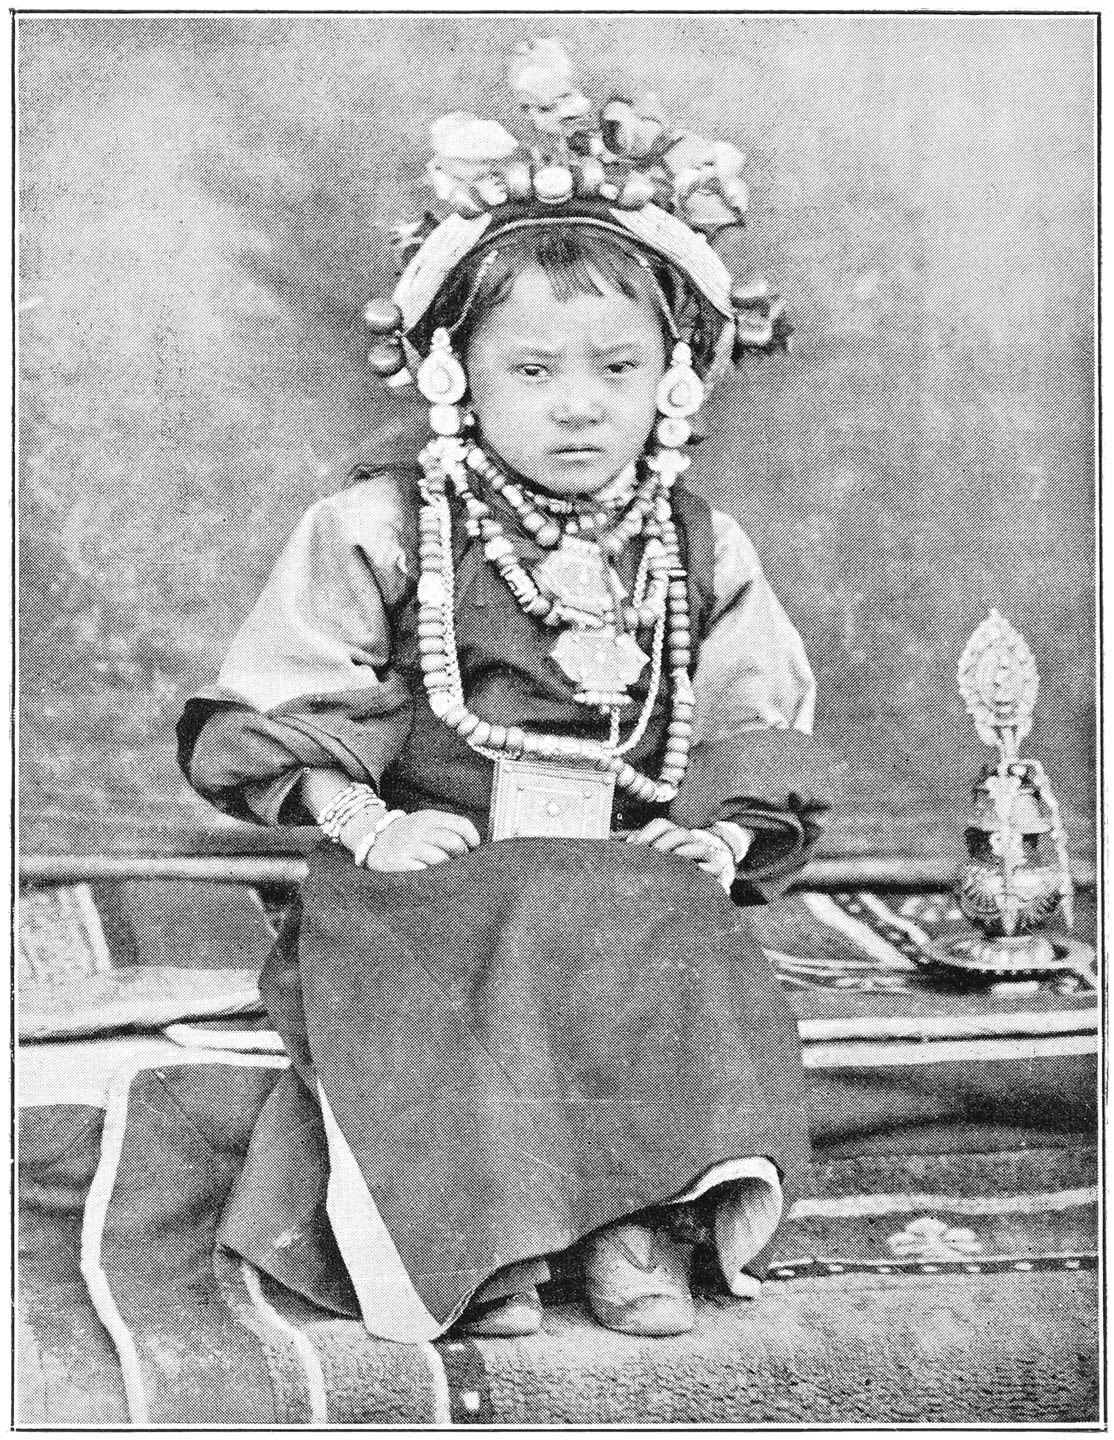 A LITTLE GIRL, DAUGHTER OF A TIBETAN NOBLEMAN.